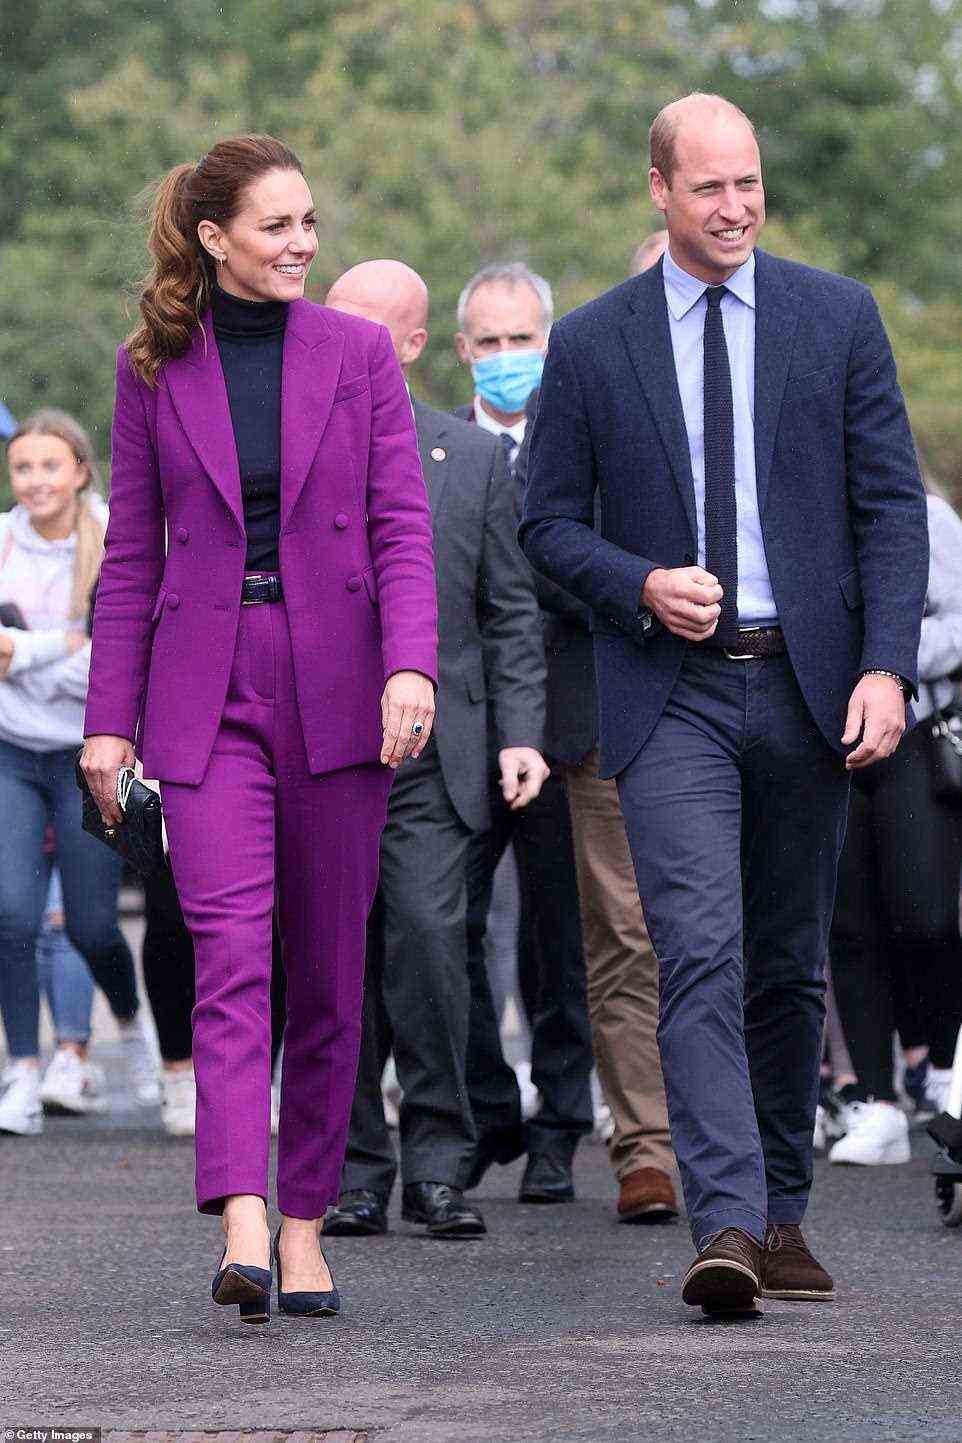 Der Herzog und die Herzogin strahlten, als sie heute über den Campus schritten, um sich während ihres königlichen Besuchs in Nordirland mit Krankenpflegestudenten zu treffen